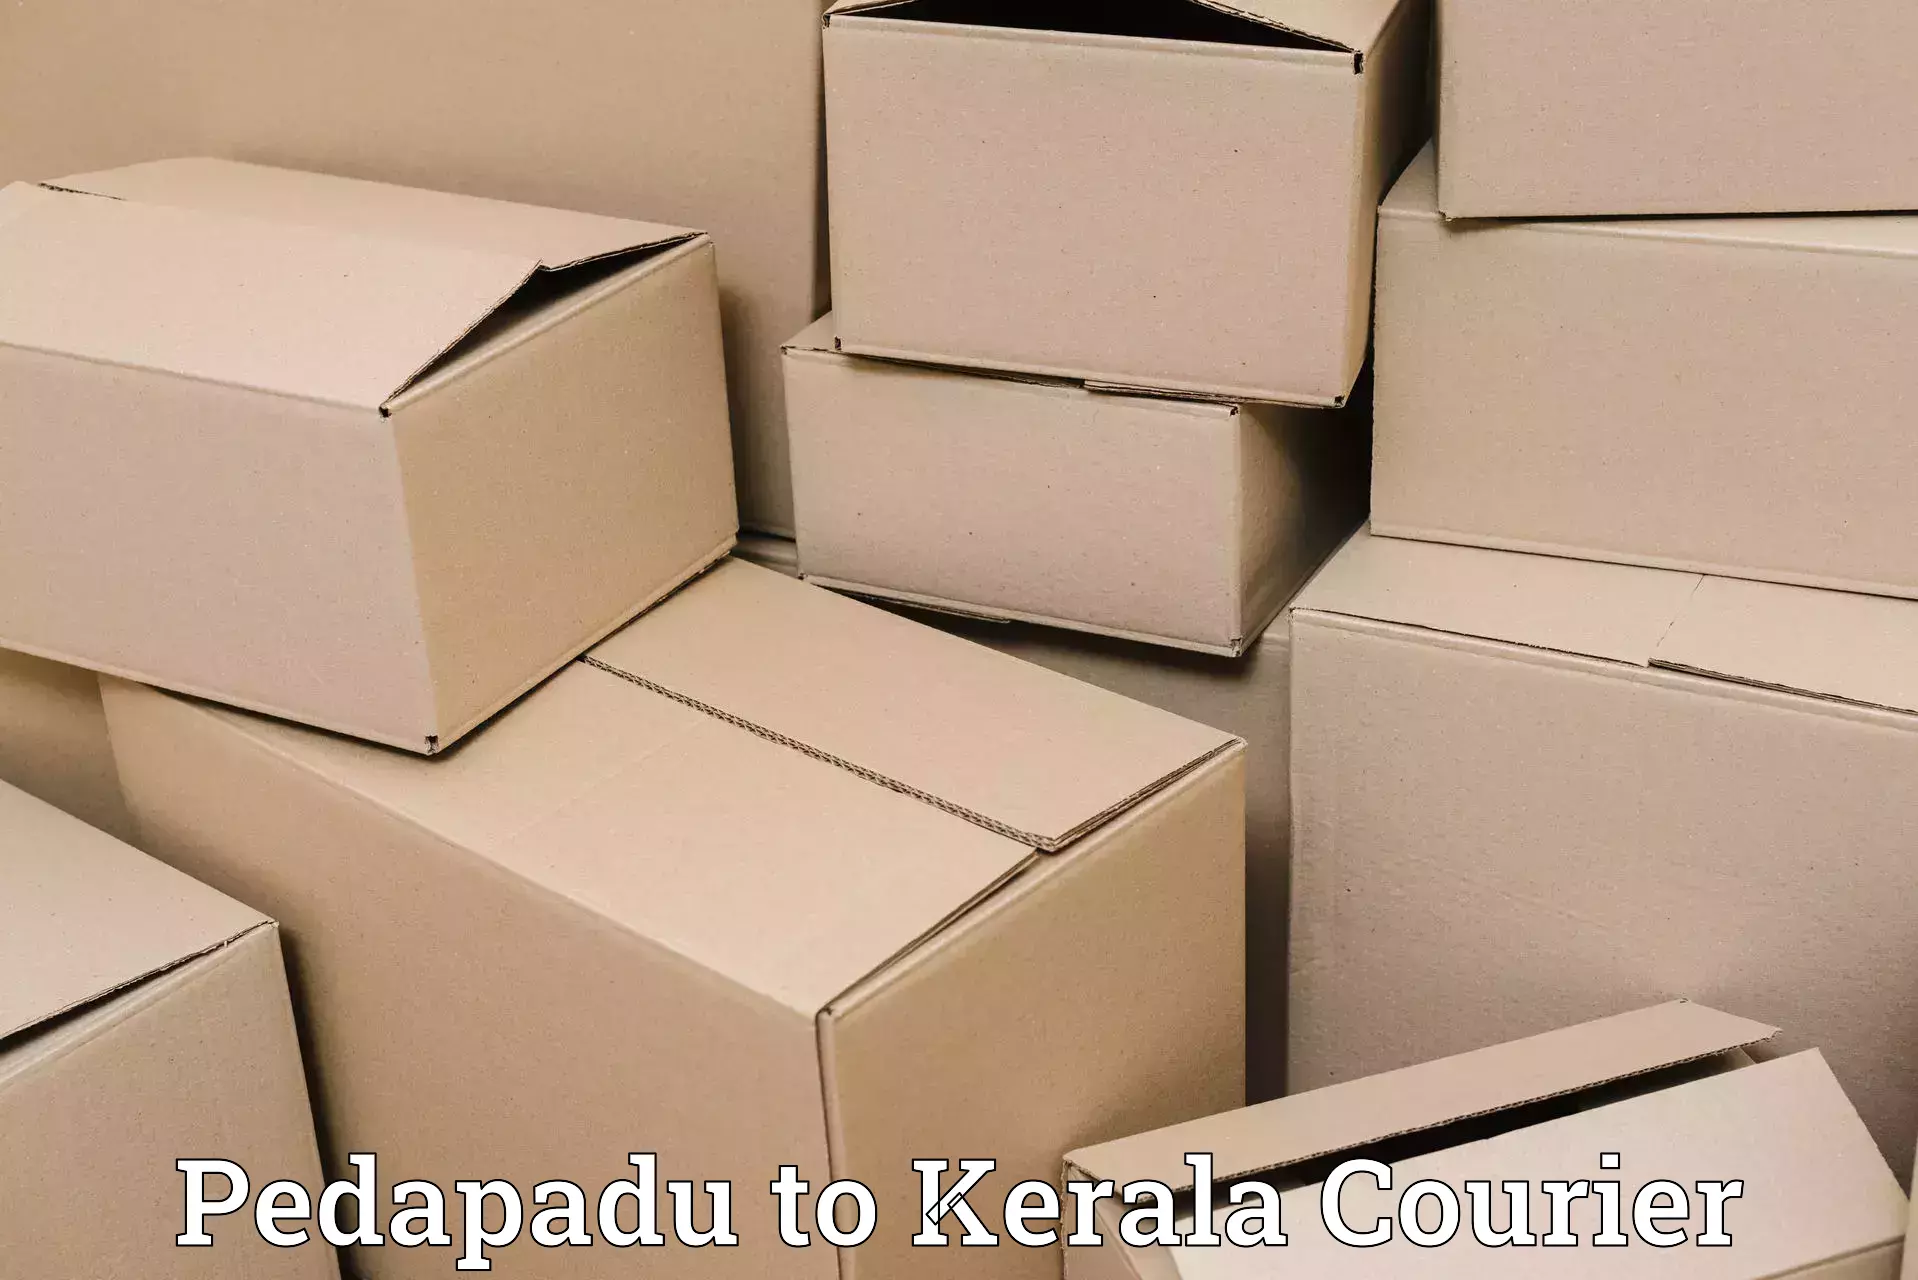 Dynamic courier operations Pedapadu to Kakkayam